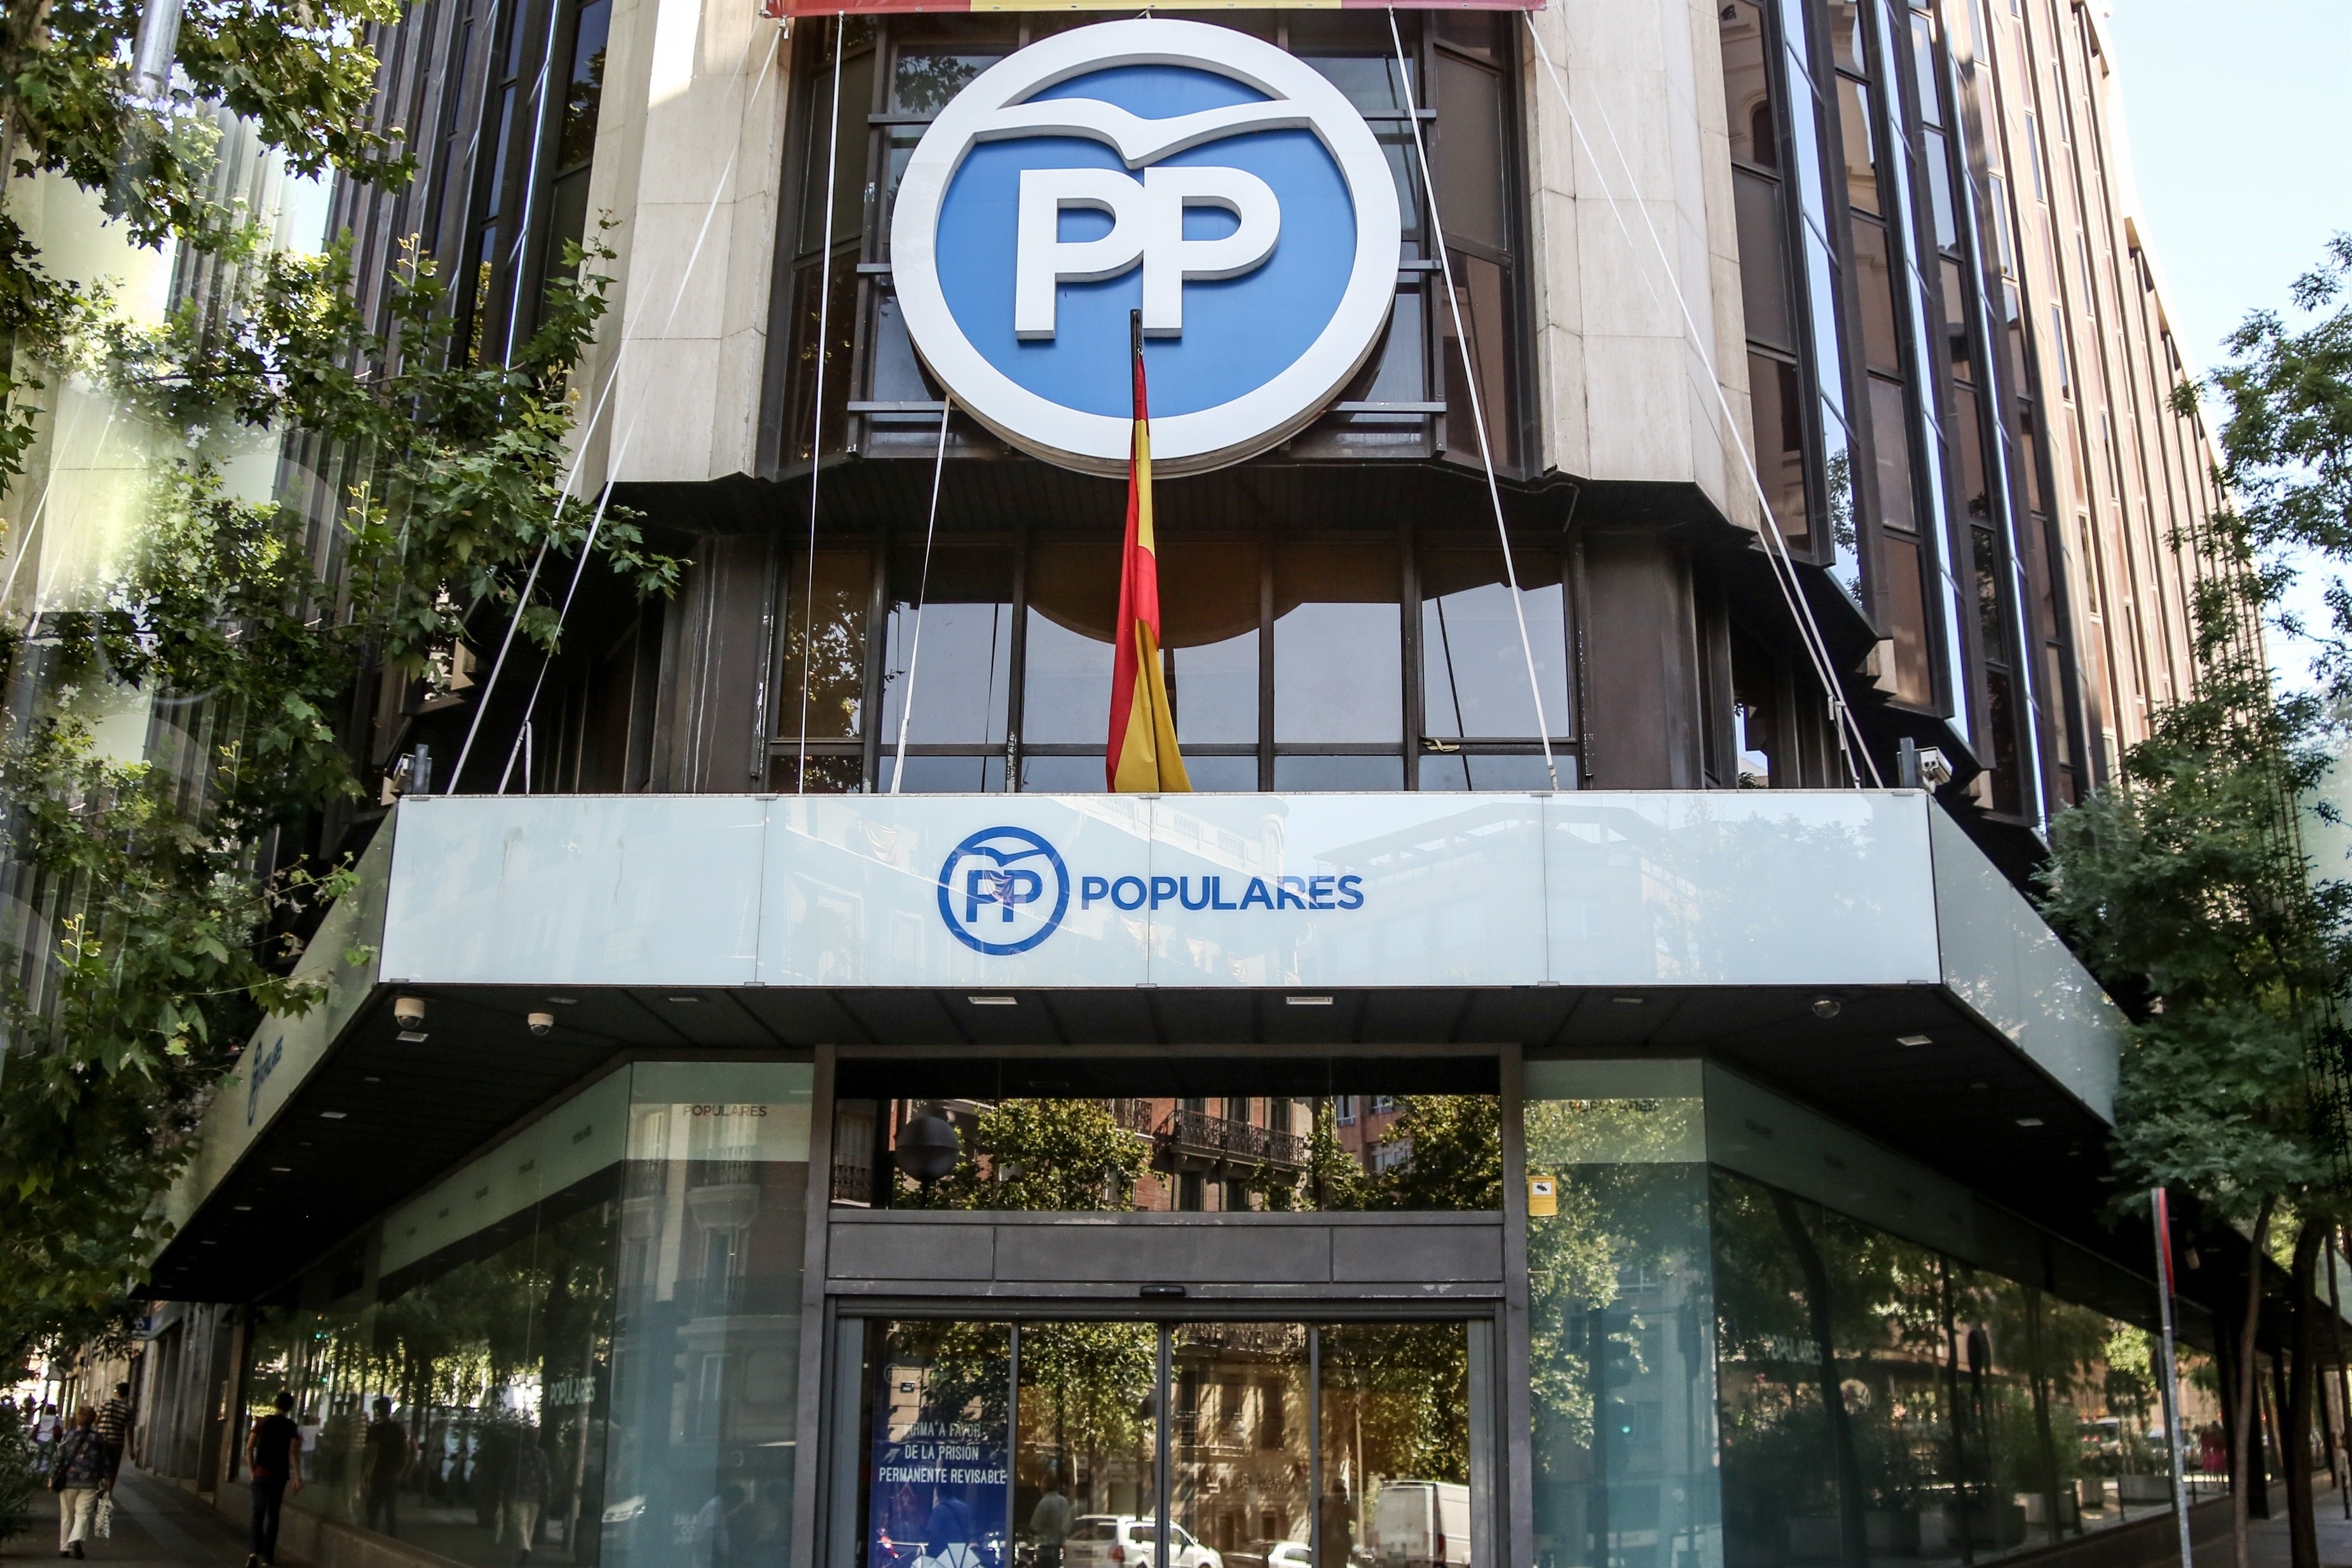 La mudanza eterna: el PP sigue en Génova 7 meses después de anunciar el traslado